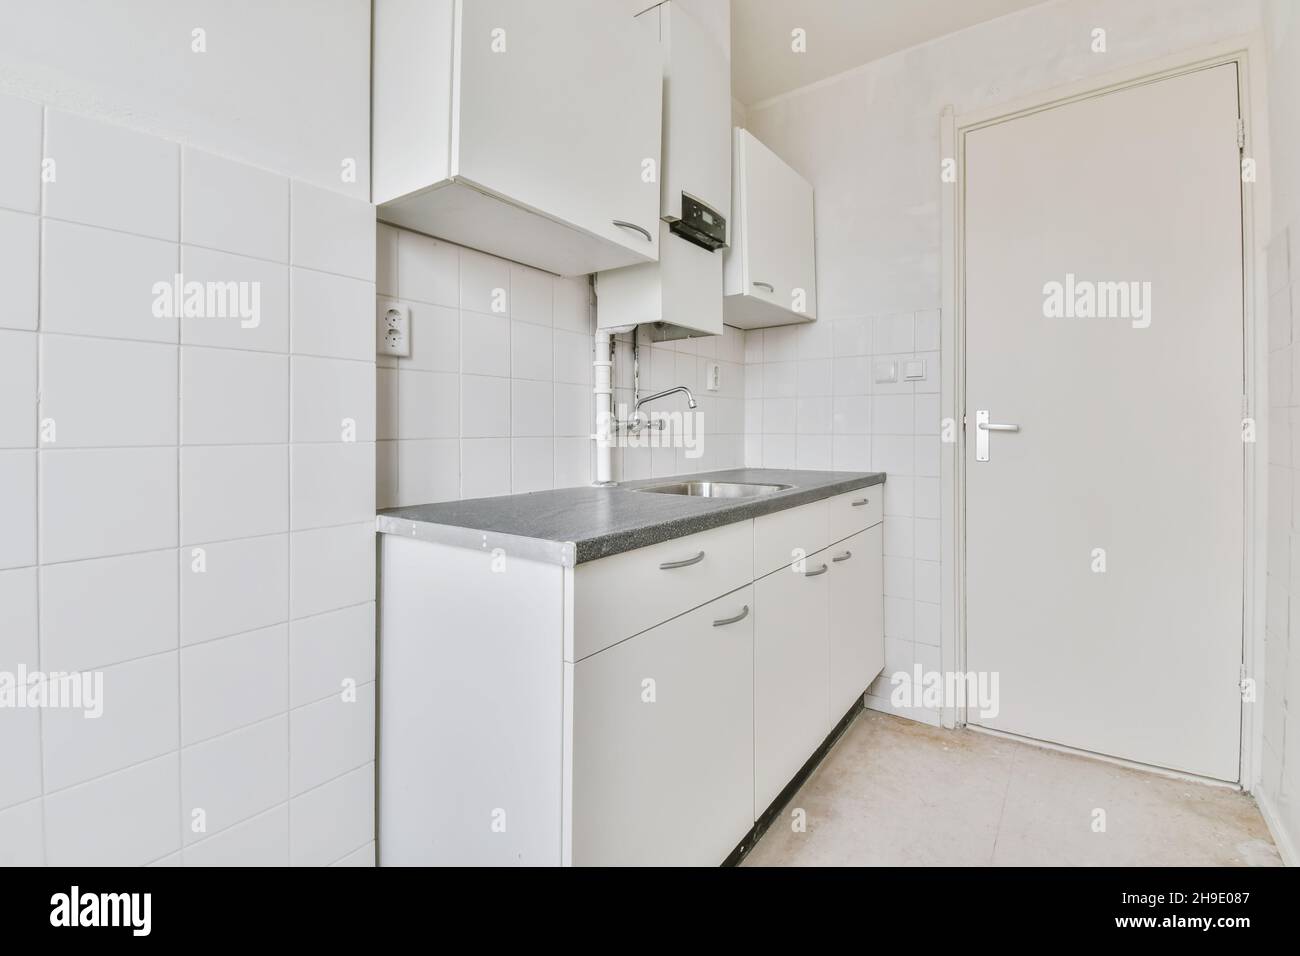 Interior design of small cozy kitchen island Stock Photo